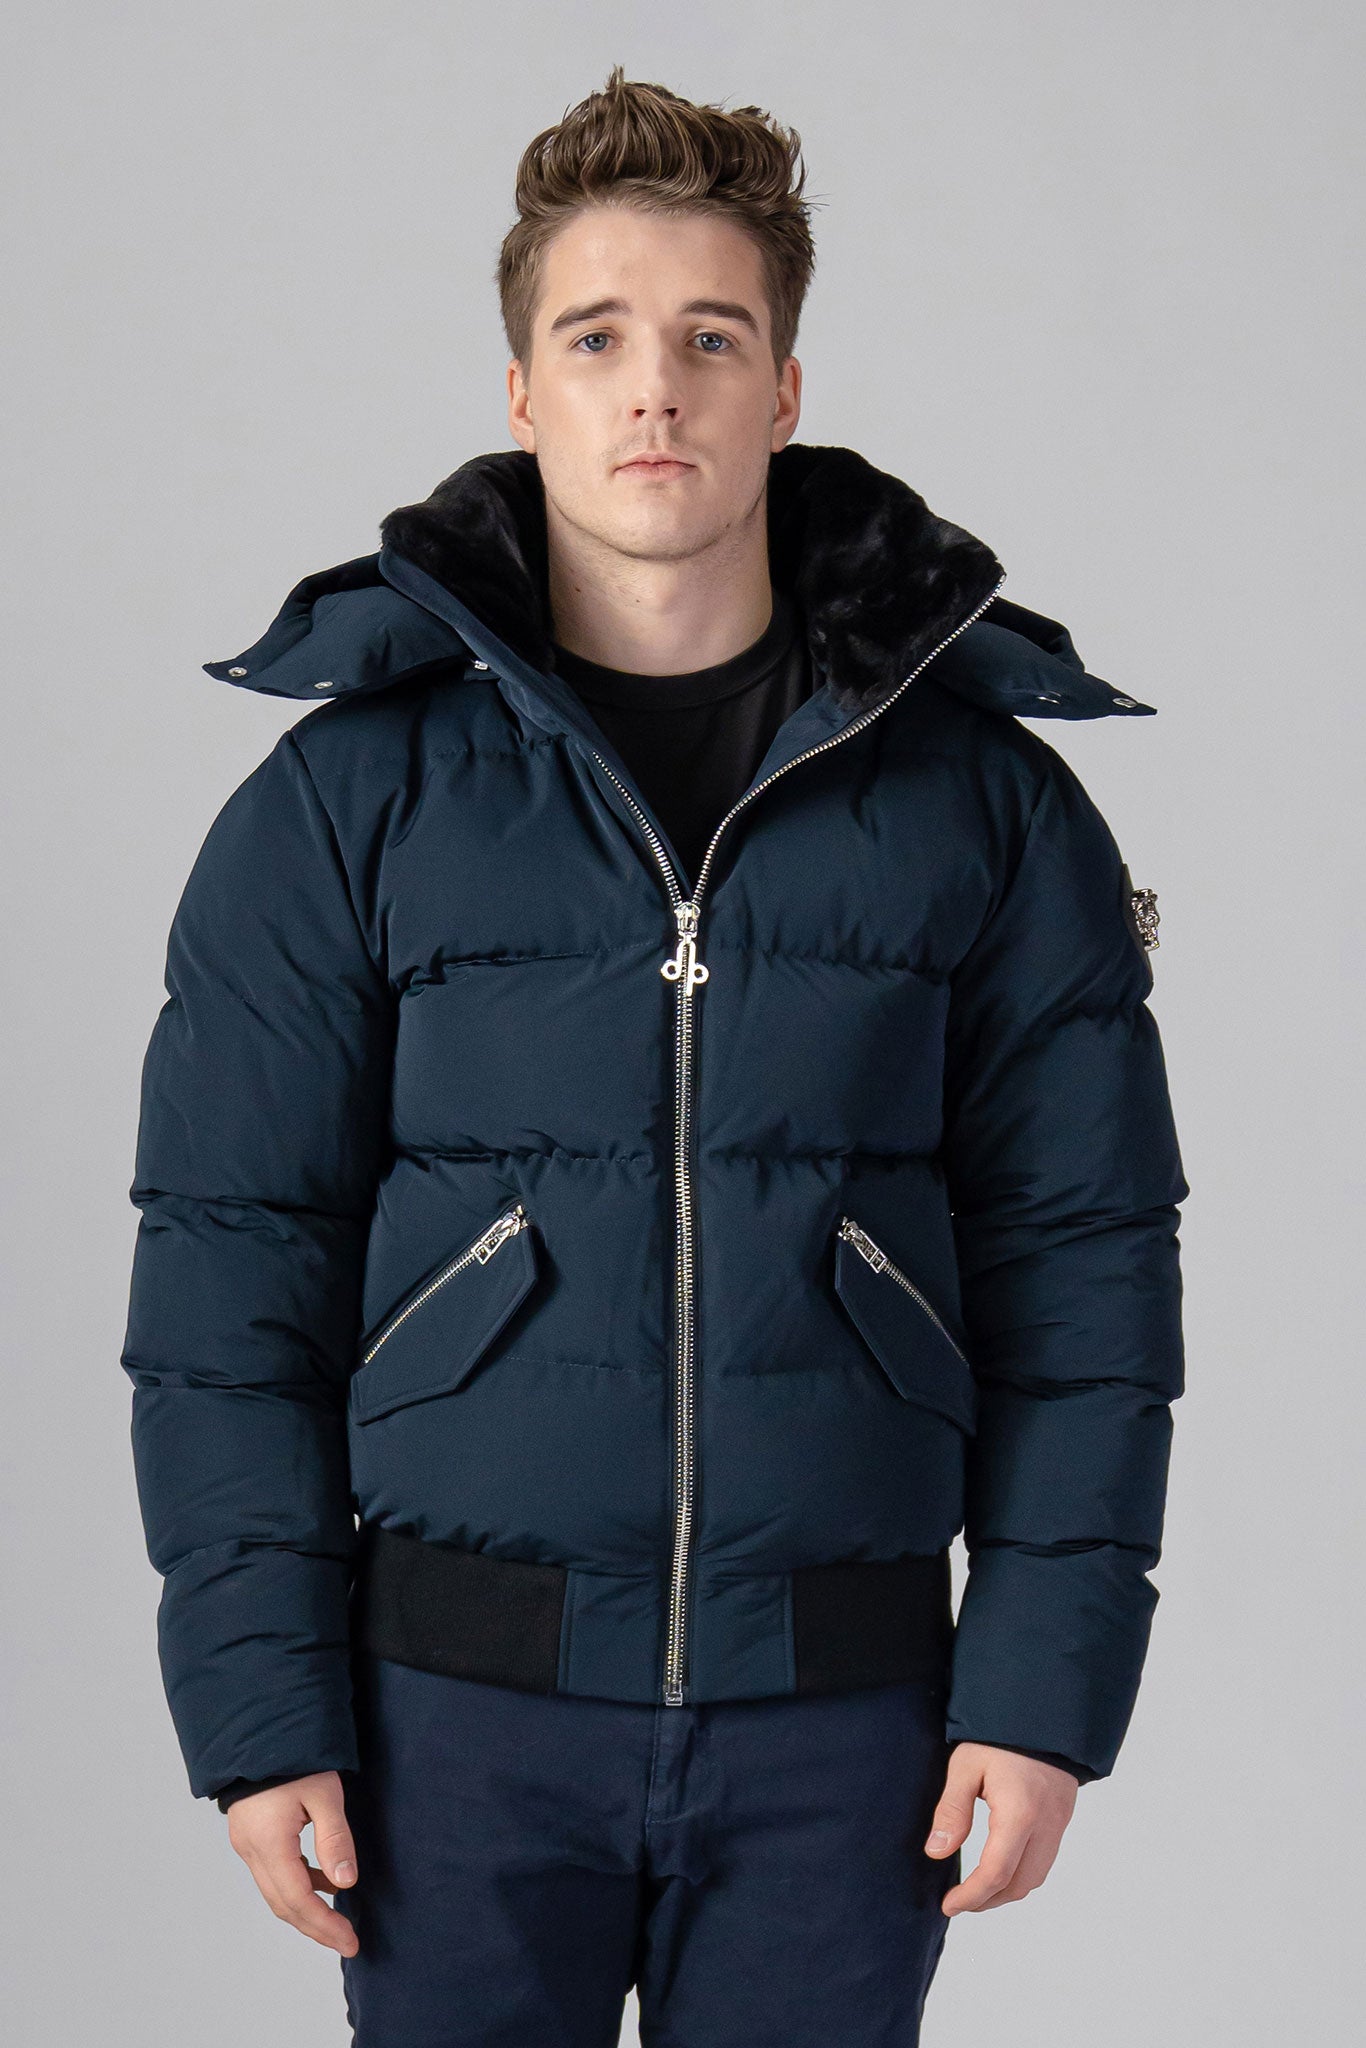 Woodpecker Men's Woody Bomber Winter coat. High-end Canadian designer winter coat for men in “Matte Navy